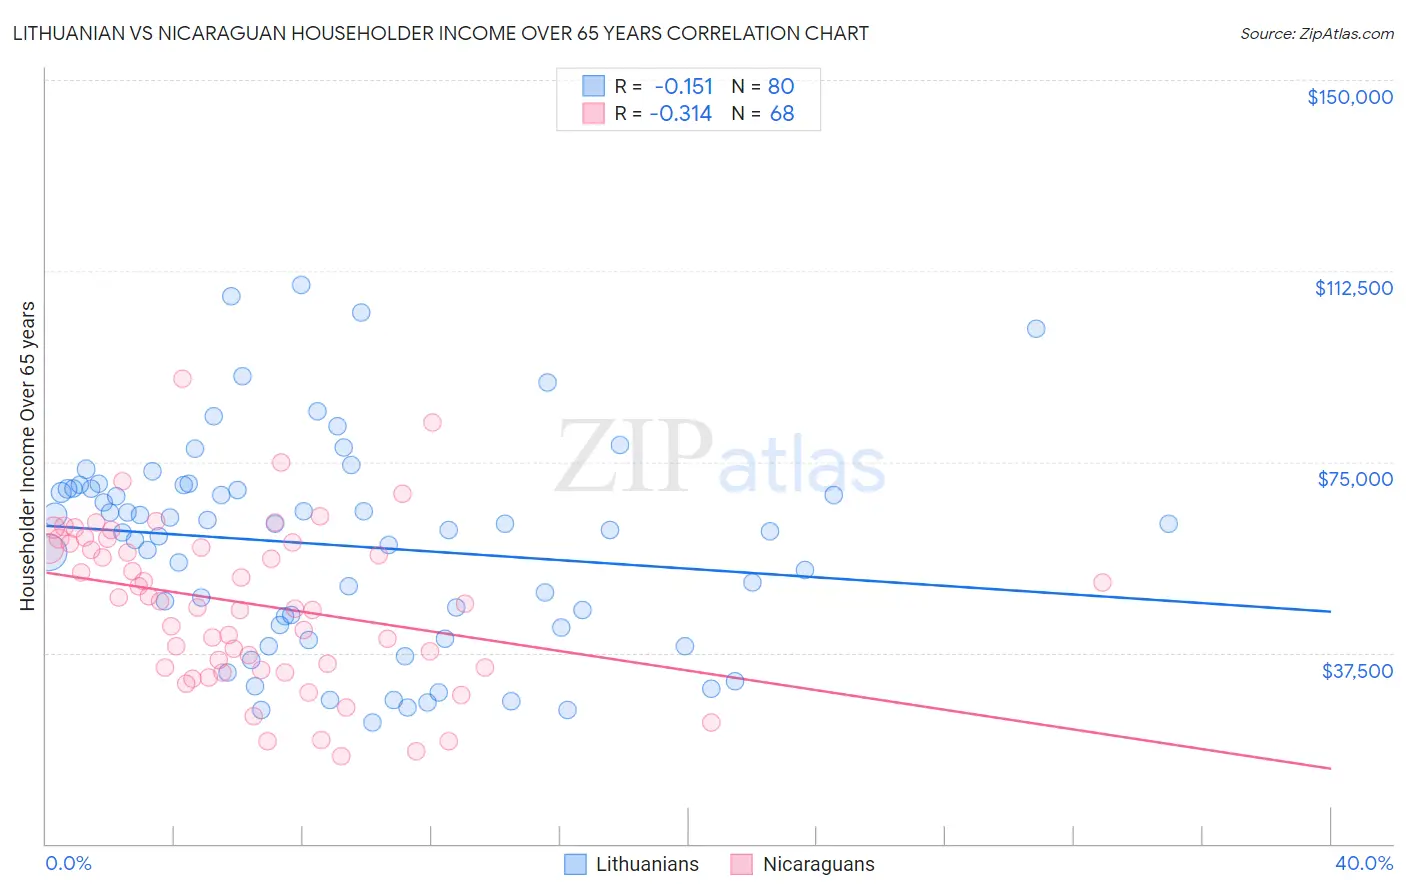 Lithuanian vs Nicaraguan Householder Income Over 65 years